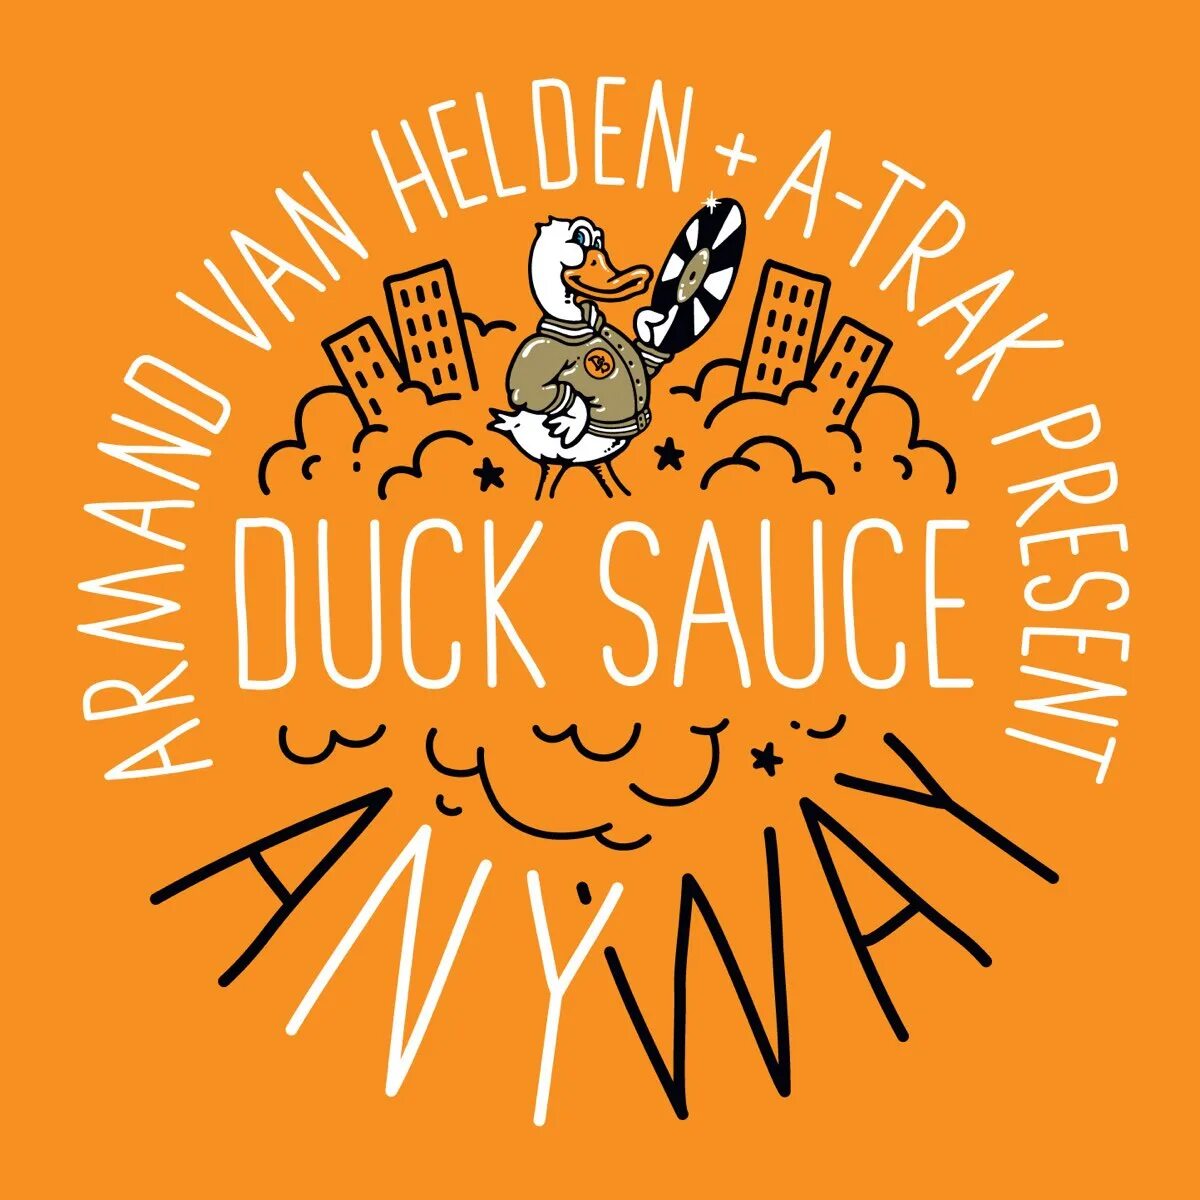 Duck sauce streisand. Duck Sauce. Duck Sauce Quack. Duck Sauce обложка. Armand St r Duck Sauce,.